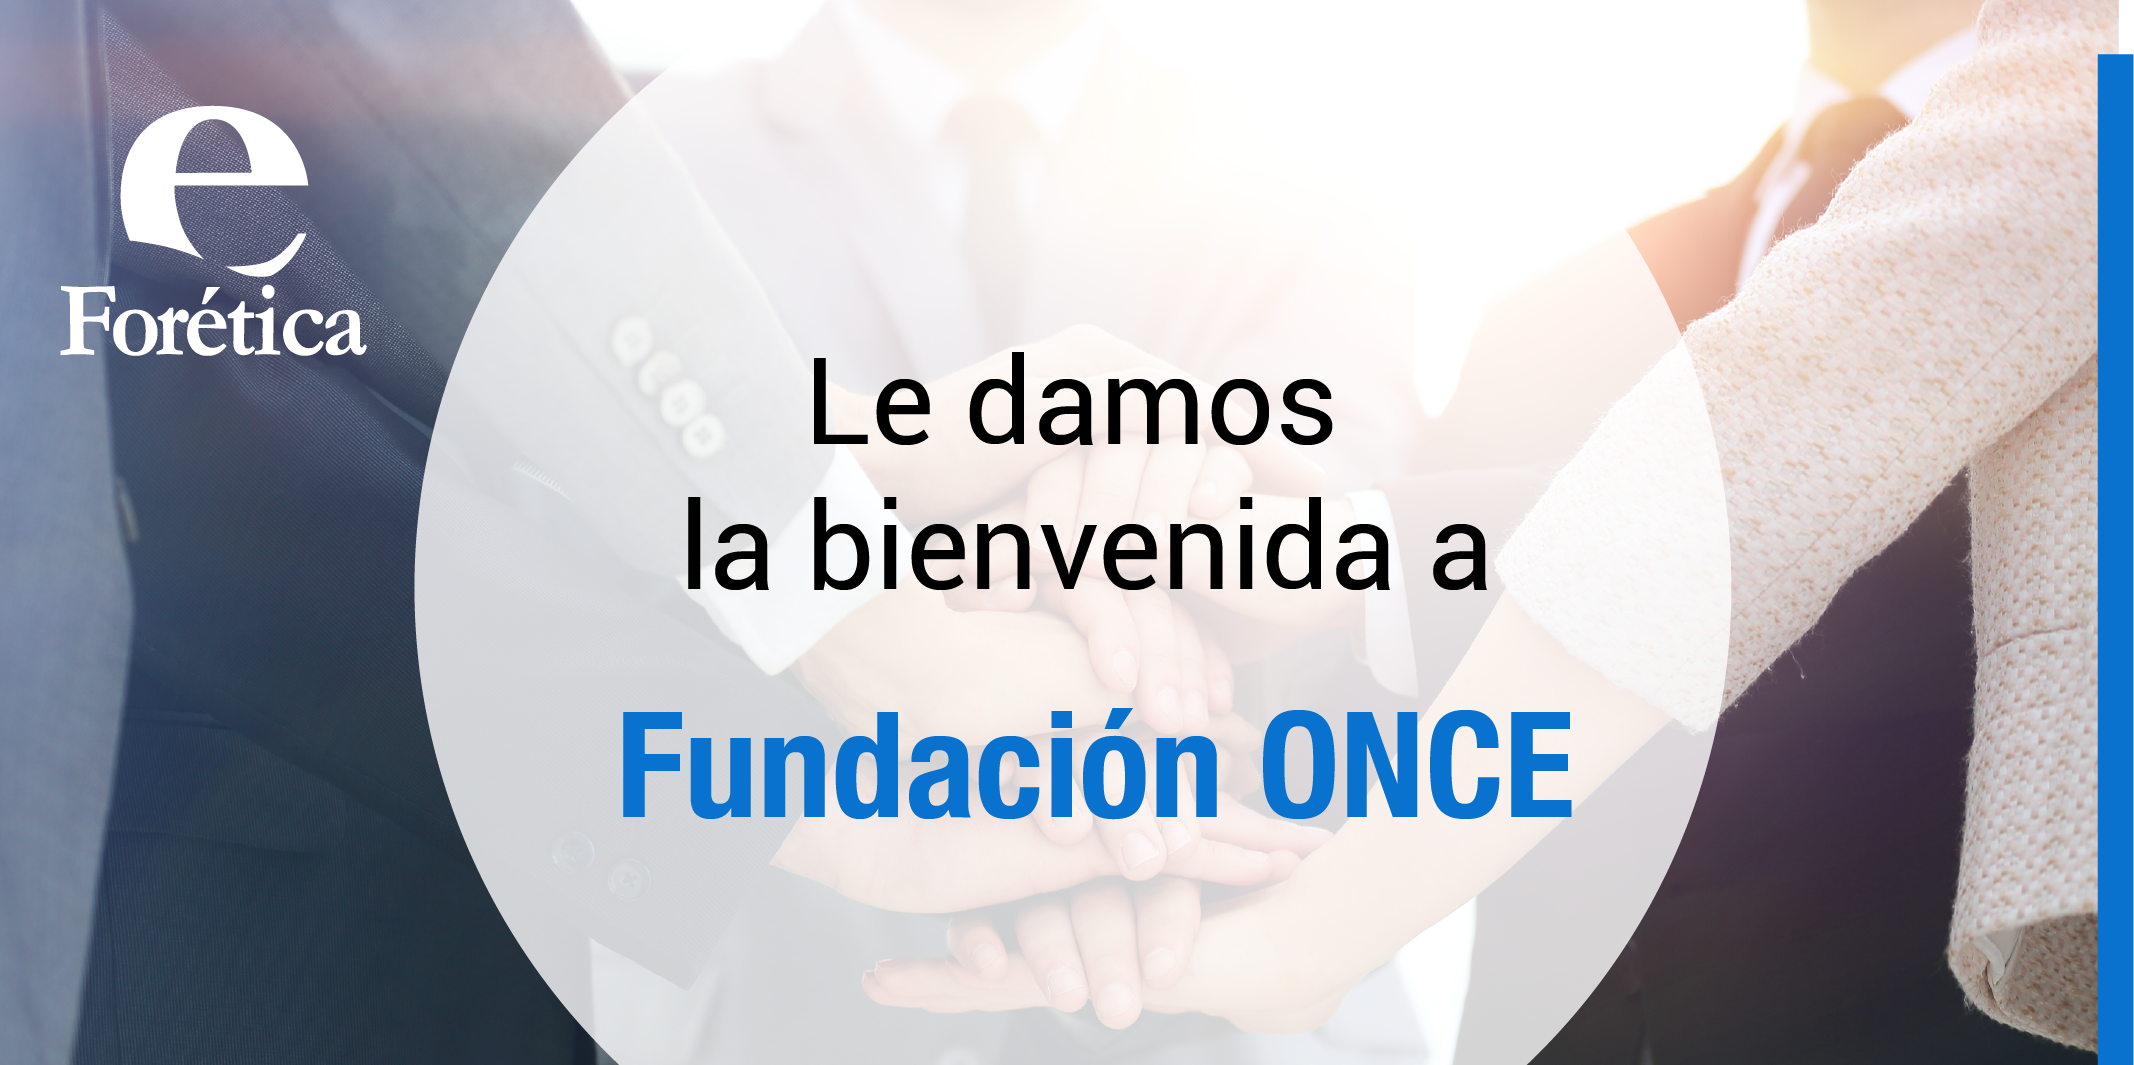 La fundación ONCE se asocia a Forética